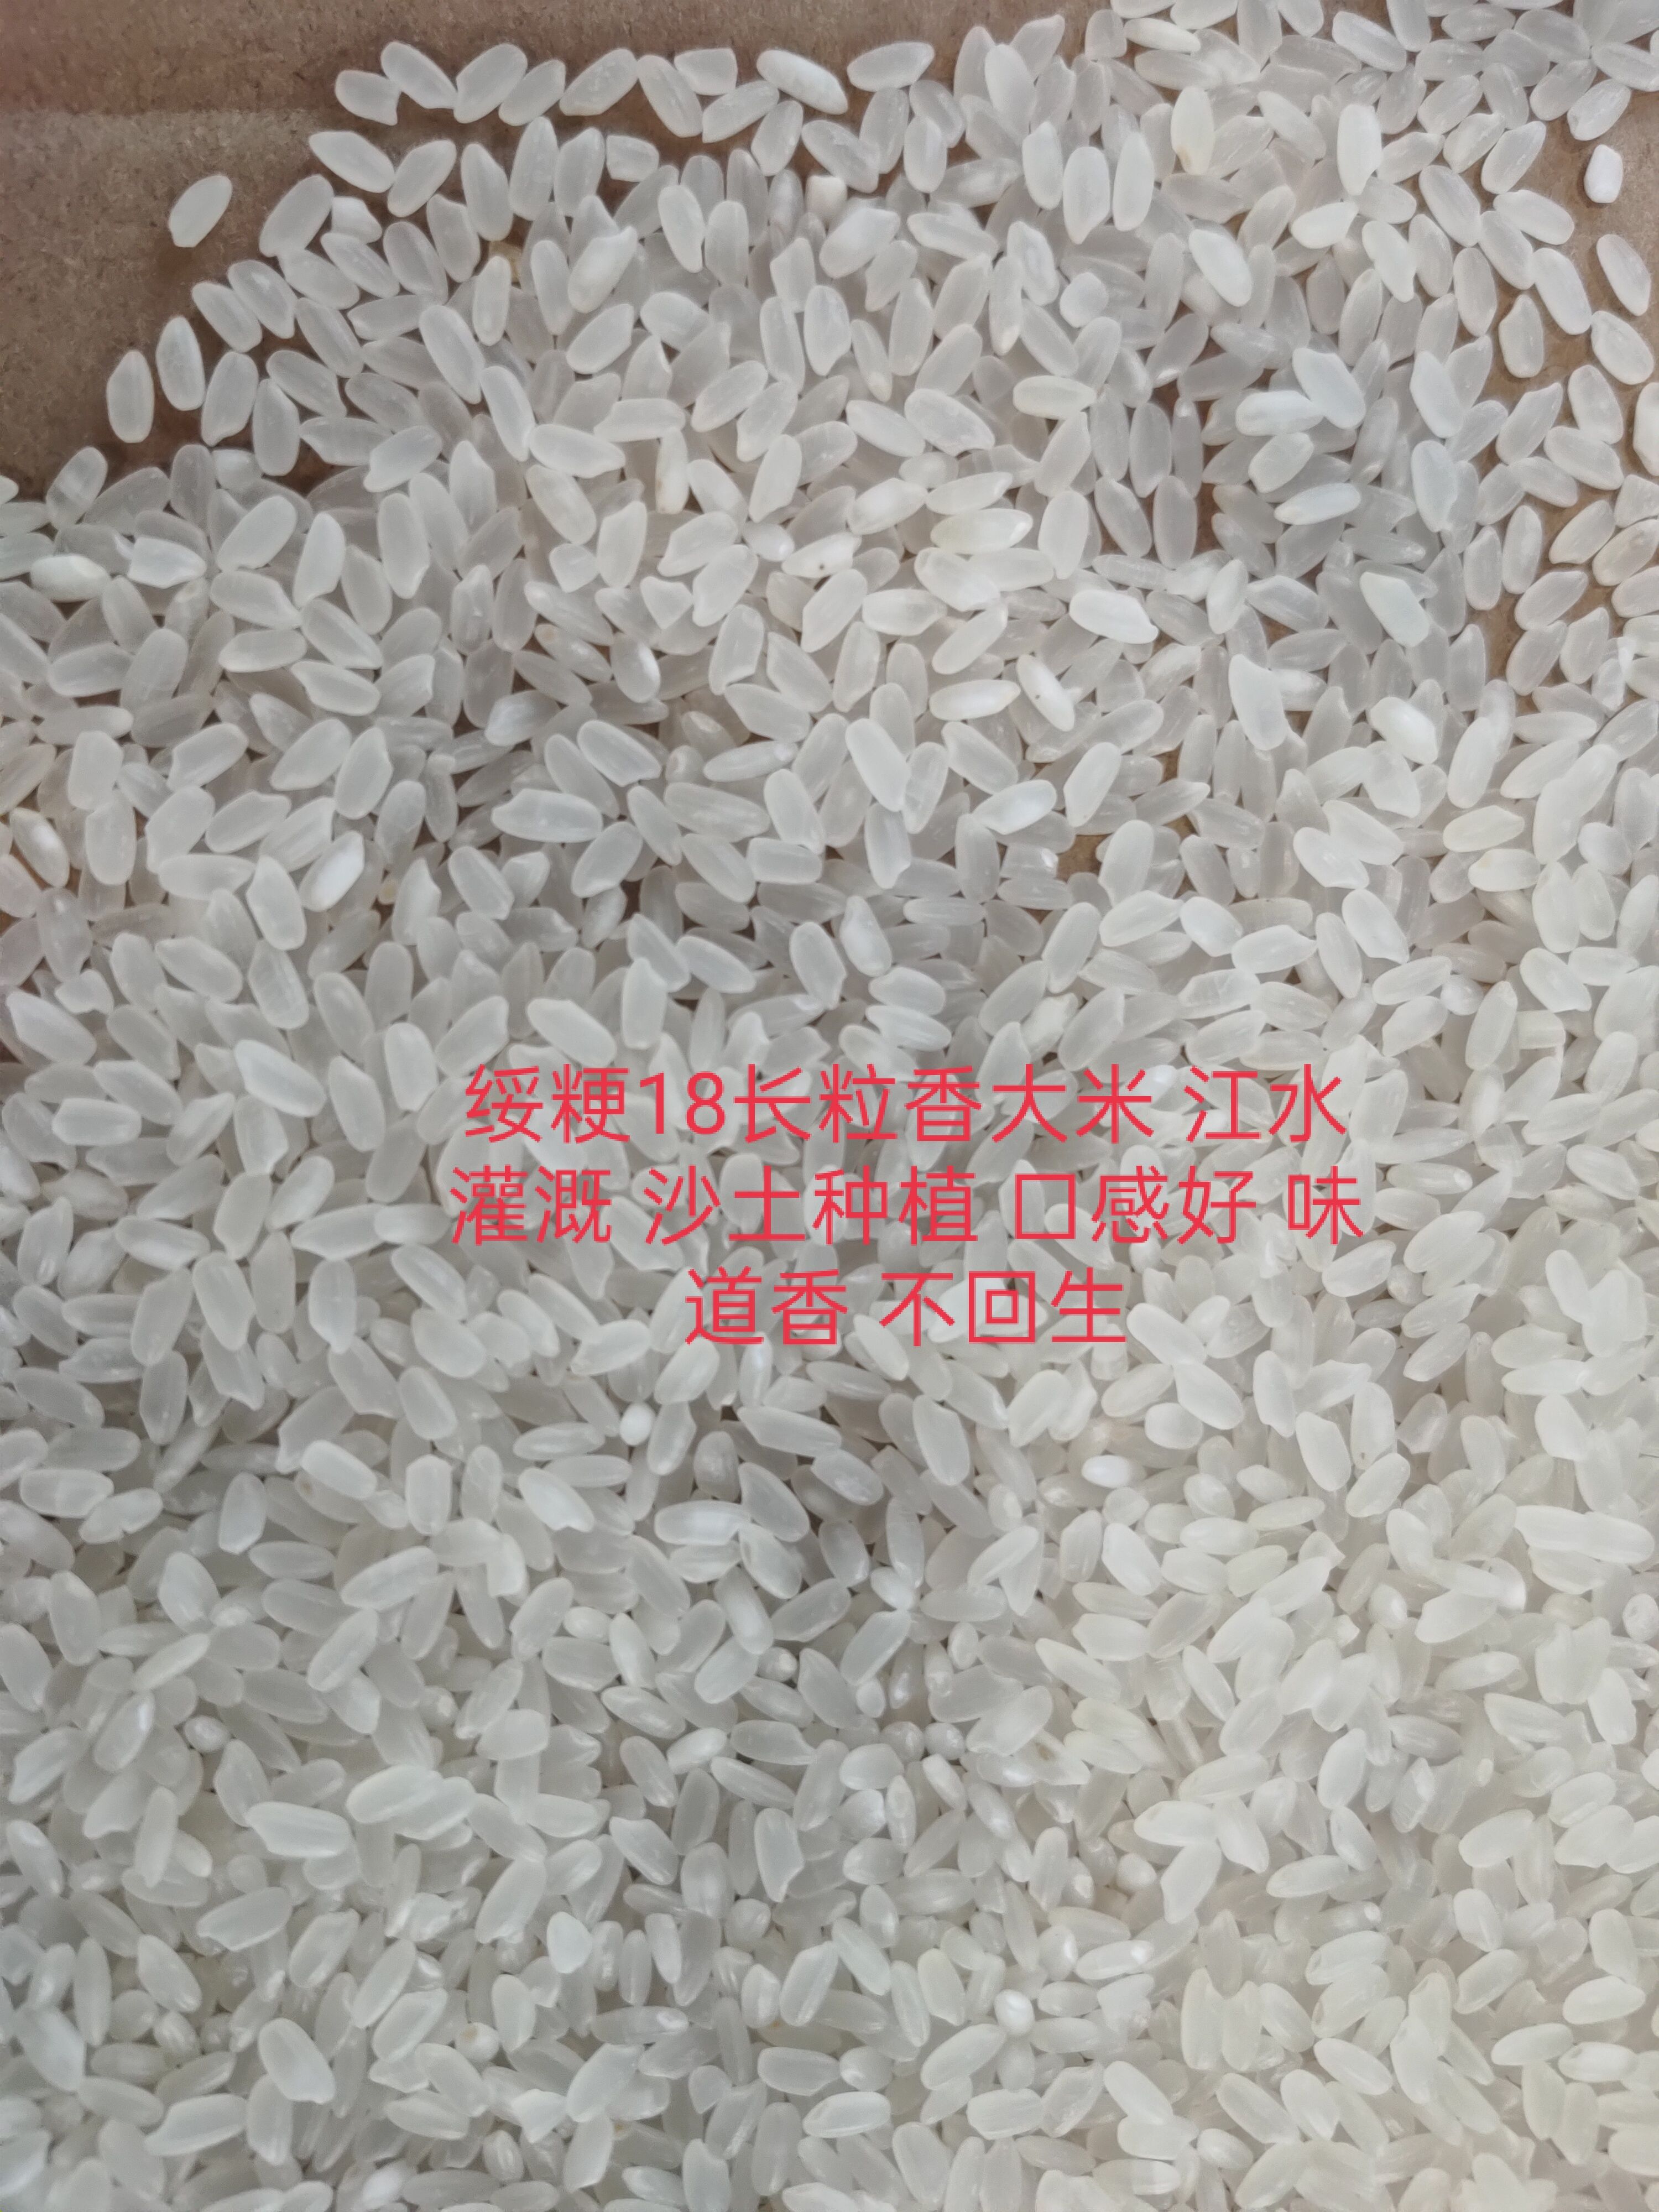  黑龙江齐齐哈尔长粒香大米 产自黑龙江扎龙国家自然保护区